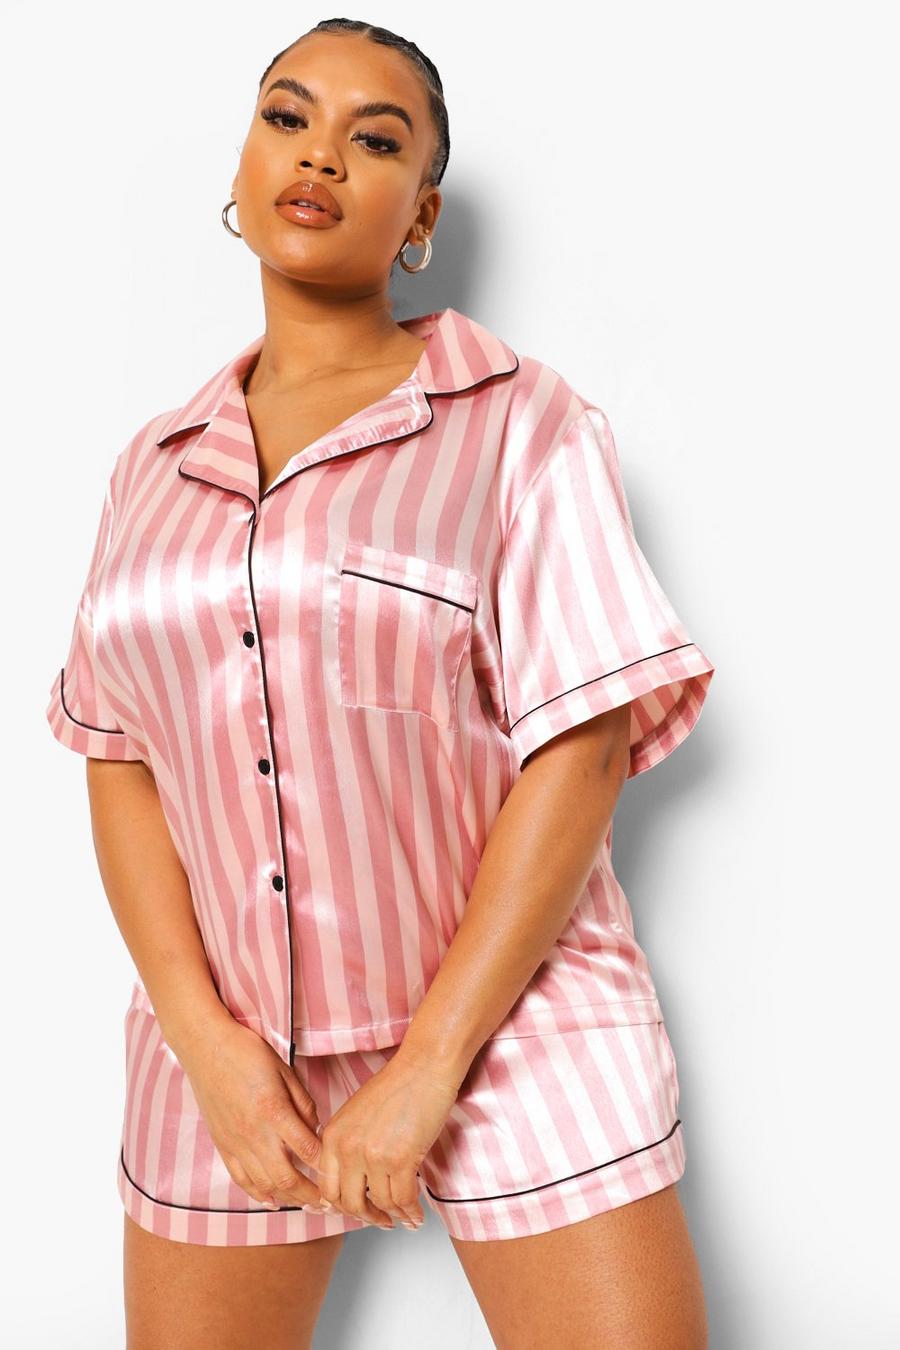 Women's Cashmere Love Pajama Set